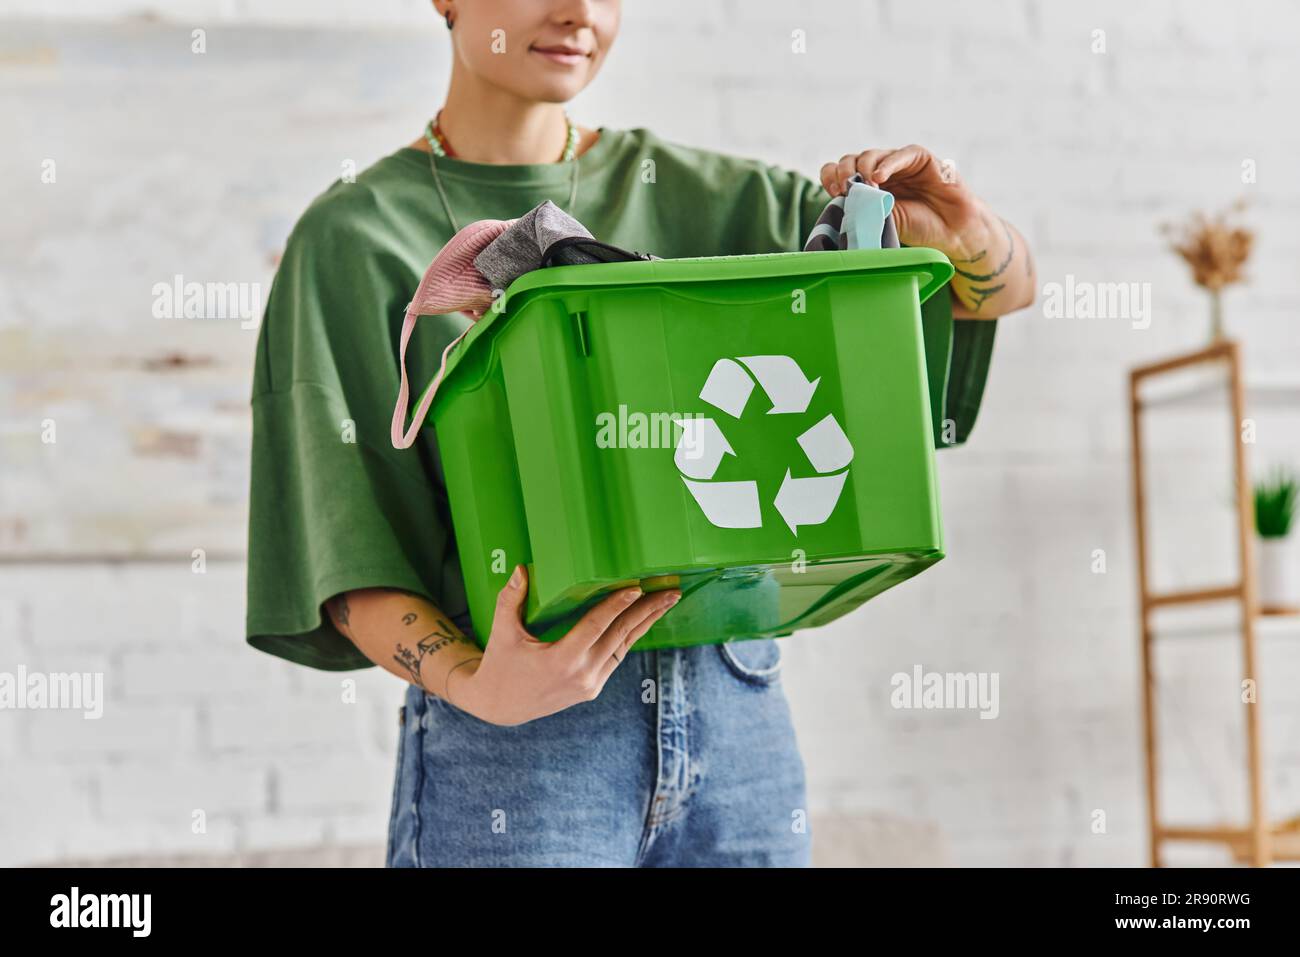 Teilansicht einer tätowierten Frau mit grüner Recyclingbox und Kleidung, während sie im Wohnzimmer steht, ethischer Konsum, nachhaltiges Wohnen und Umwelt Stockfoto